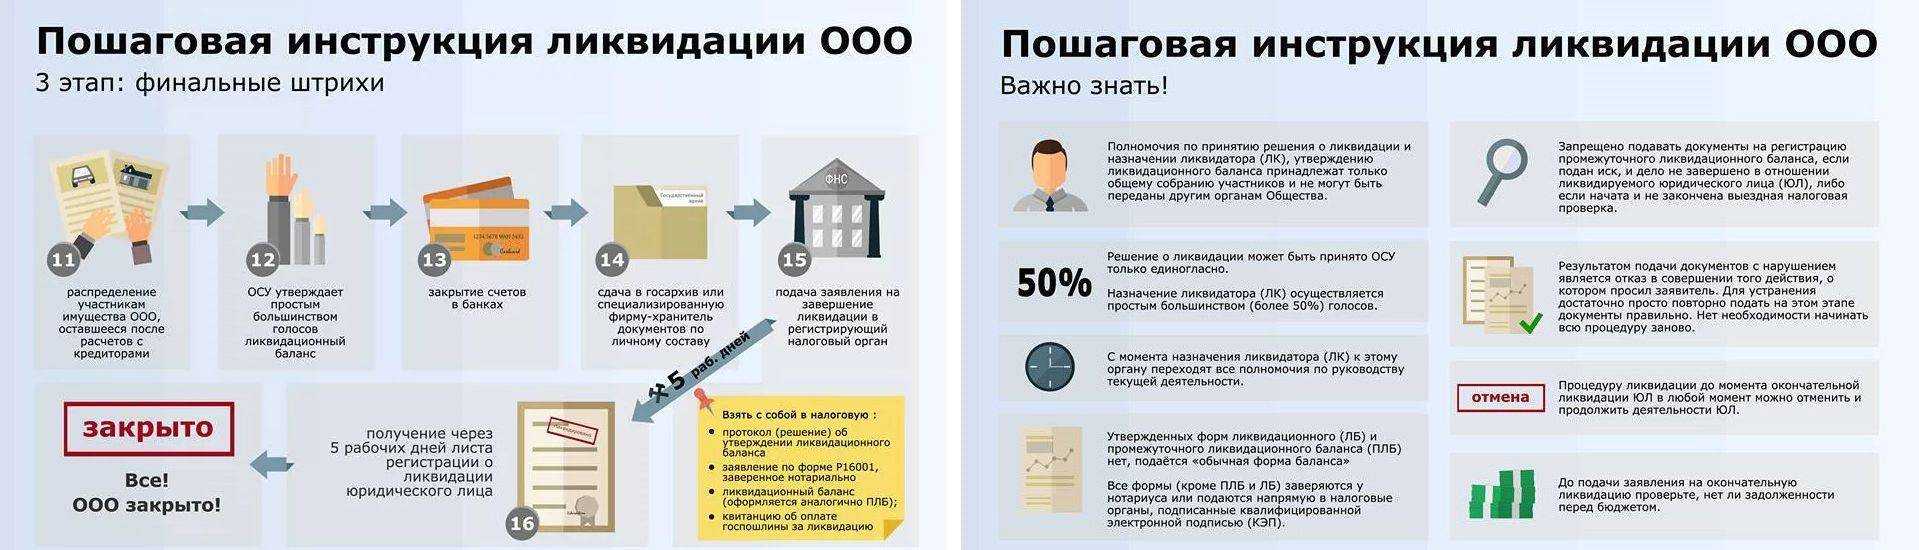 Упрощенная ликвидация ооо и этапы проведения процедуры на сайте rigbi.ru